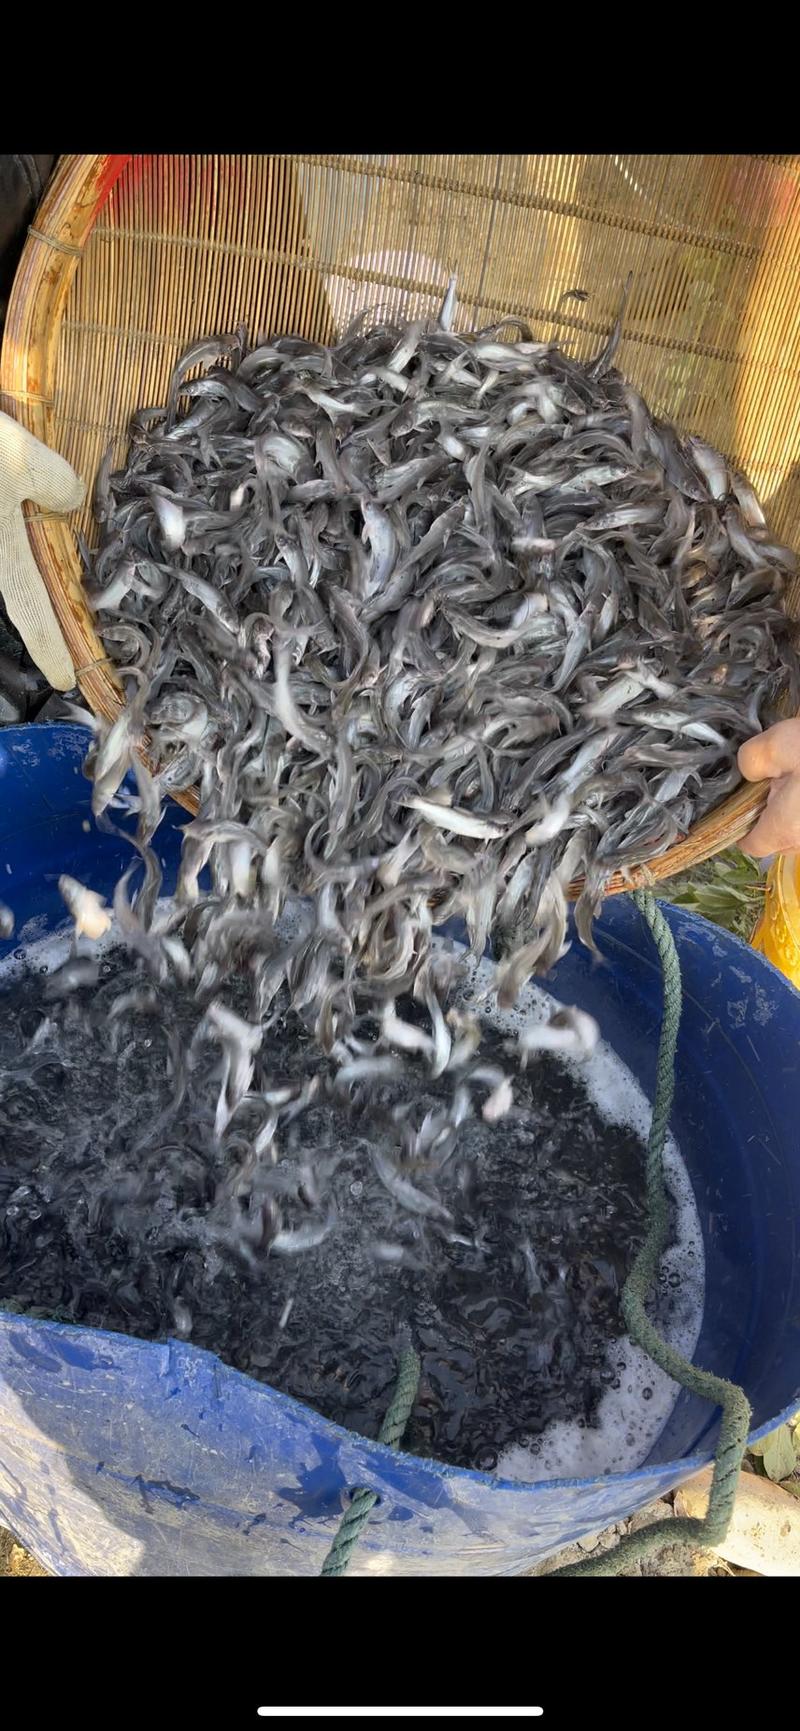 斑点叉尾鮰鱼苗食用清江鱼养殖黔鱼淡水鱼好养殖